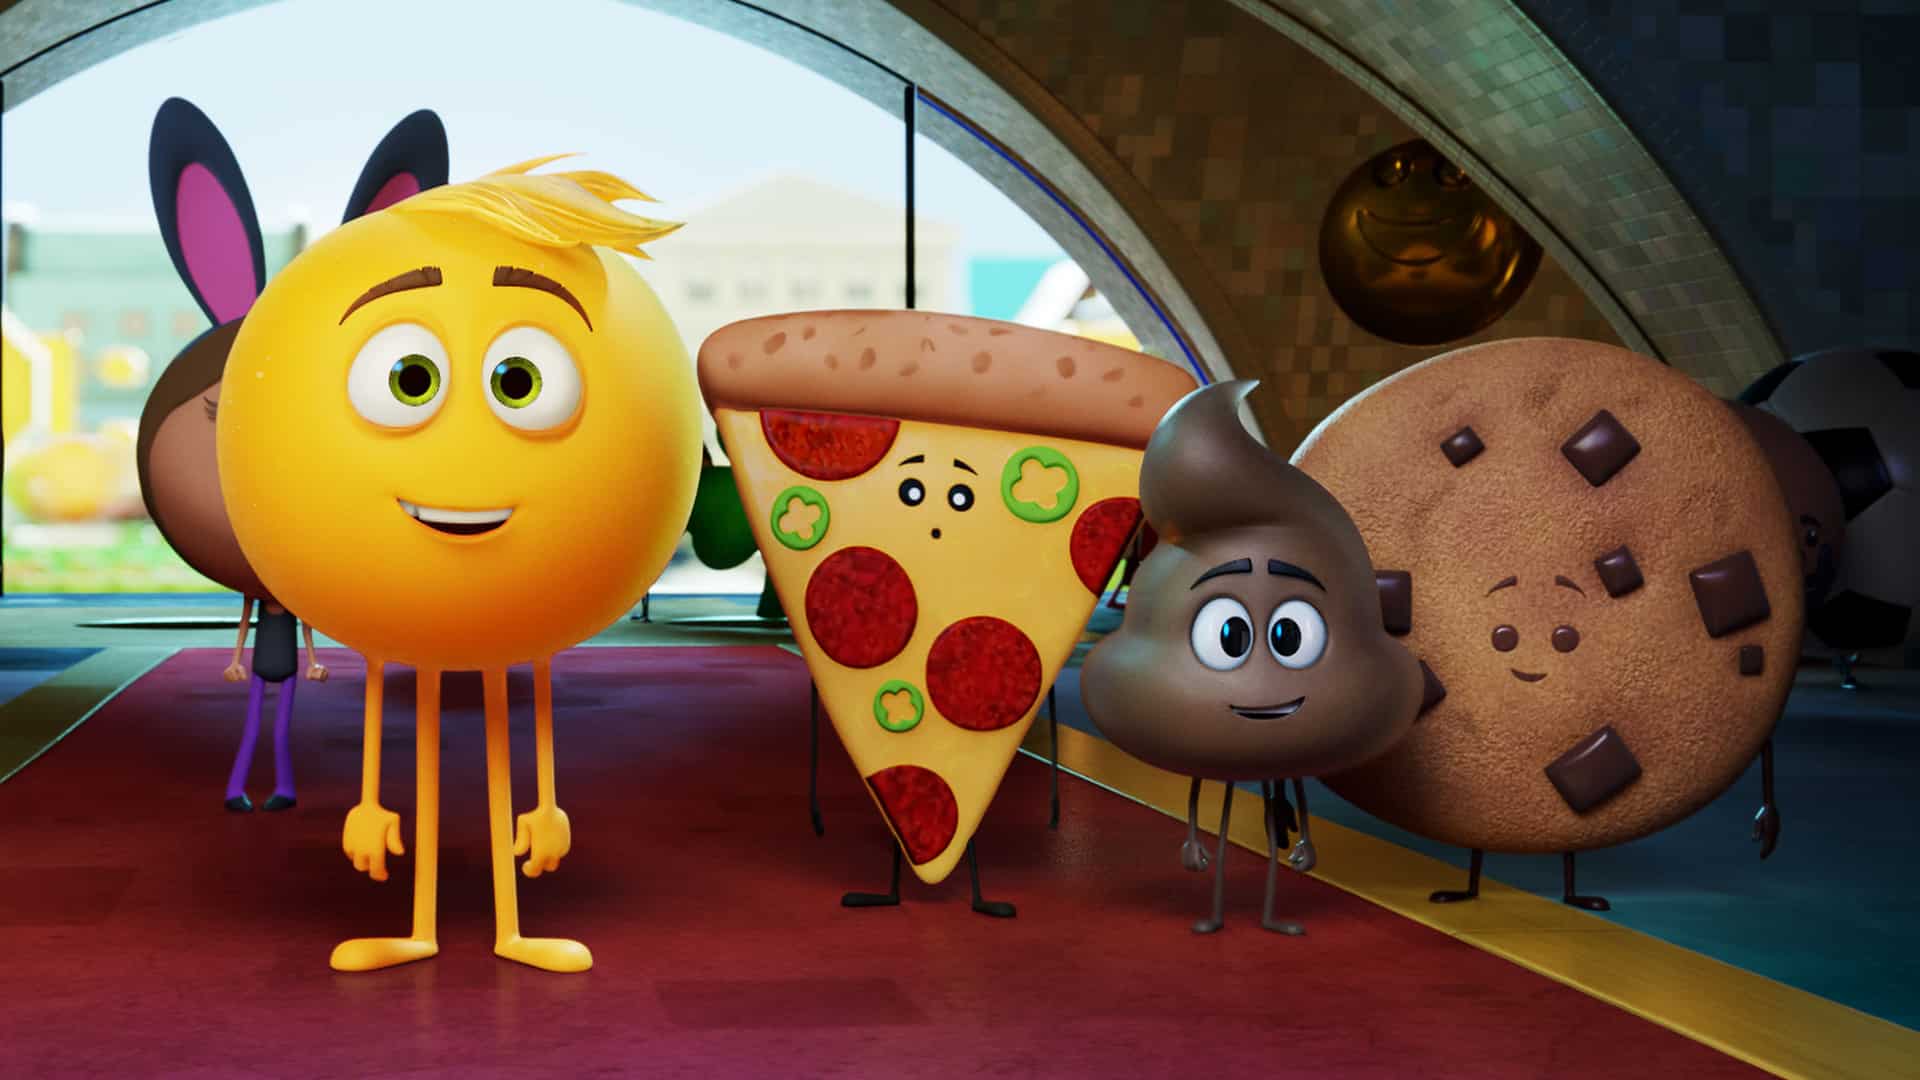 emoji movie trailer